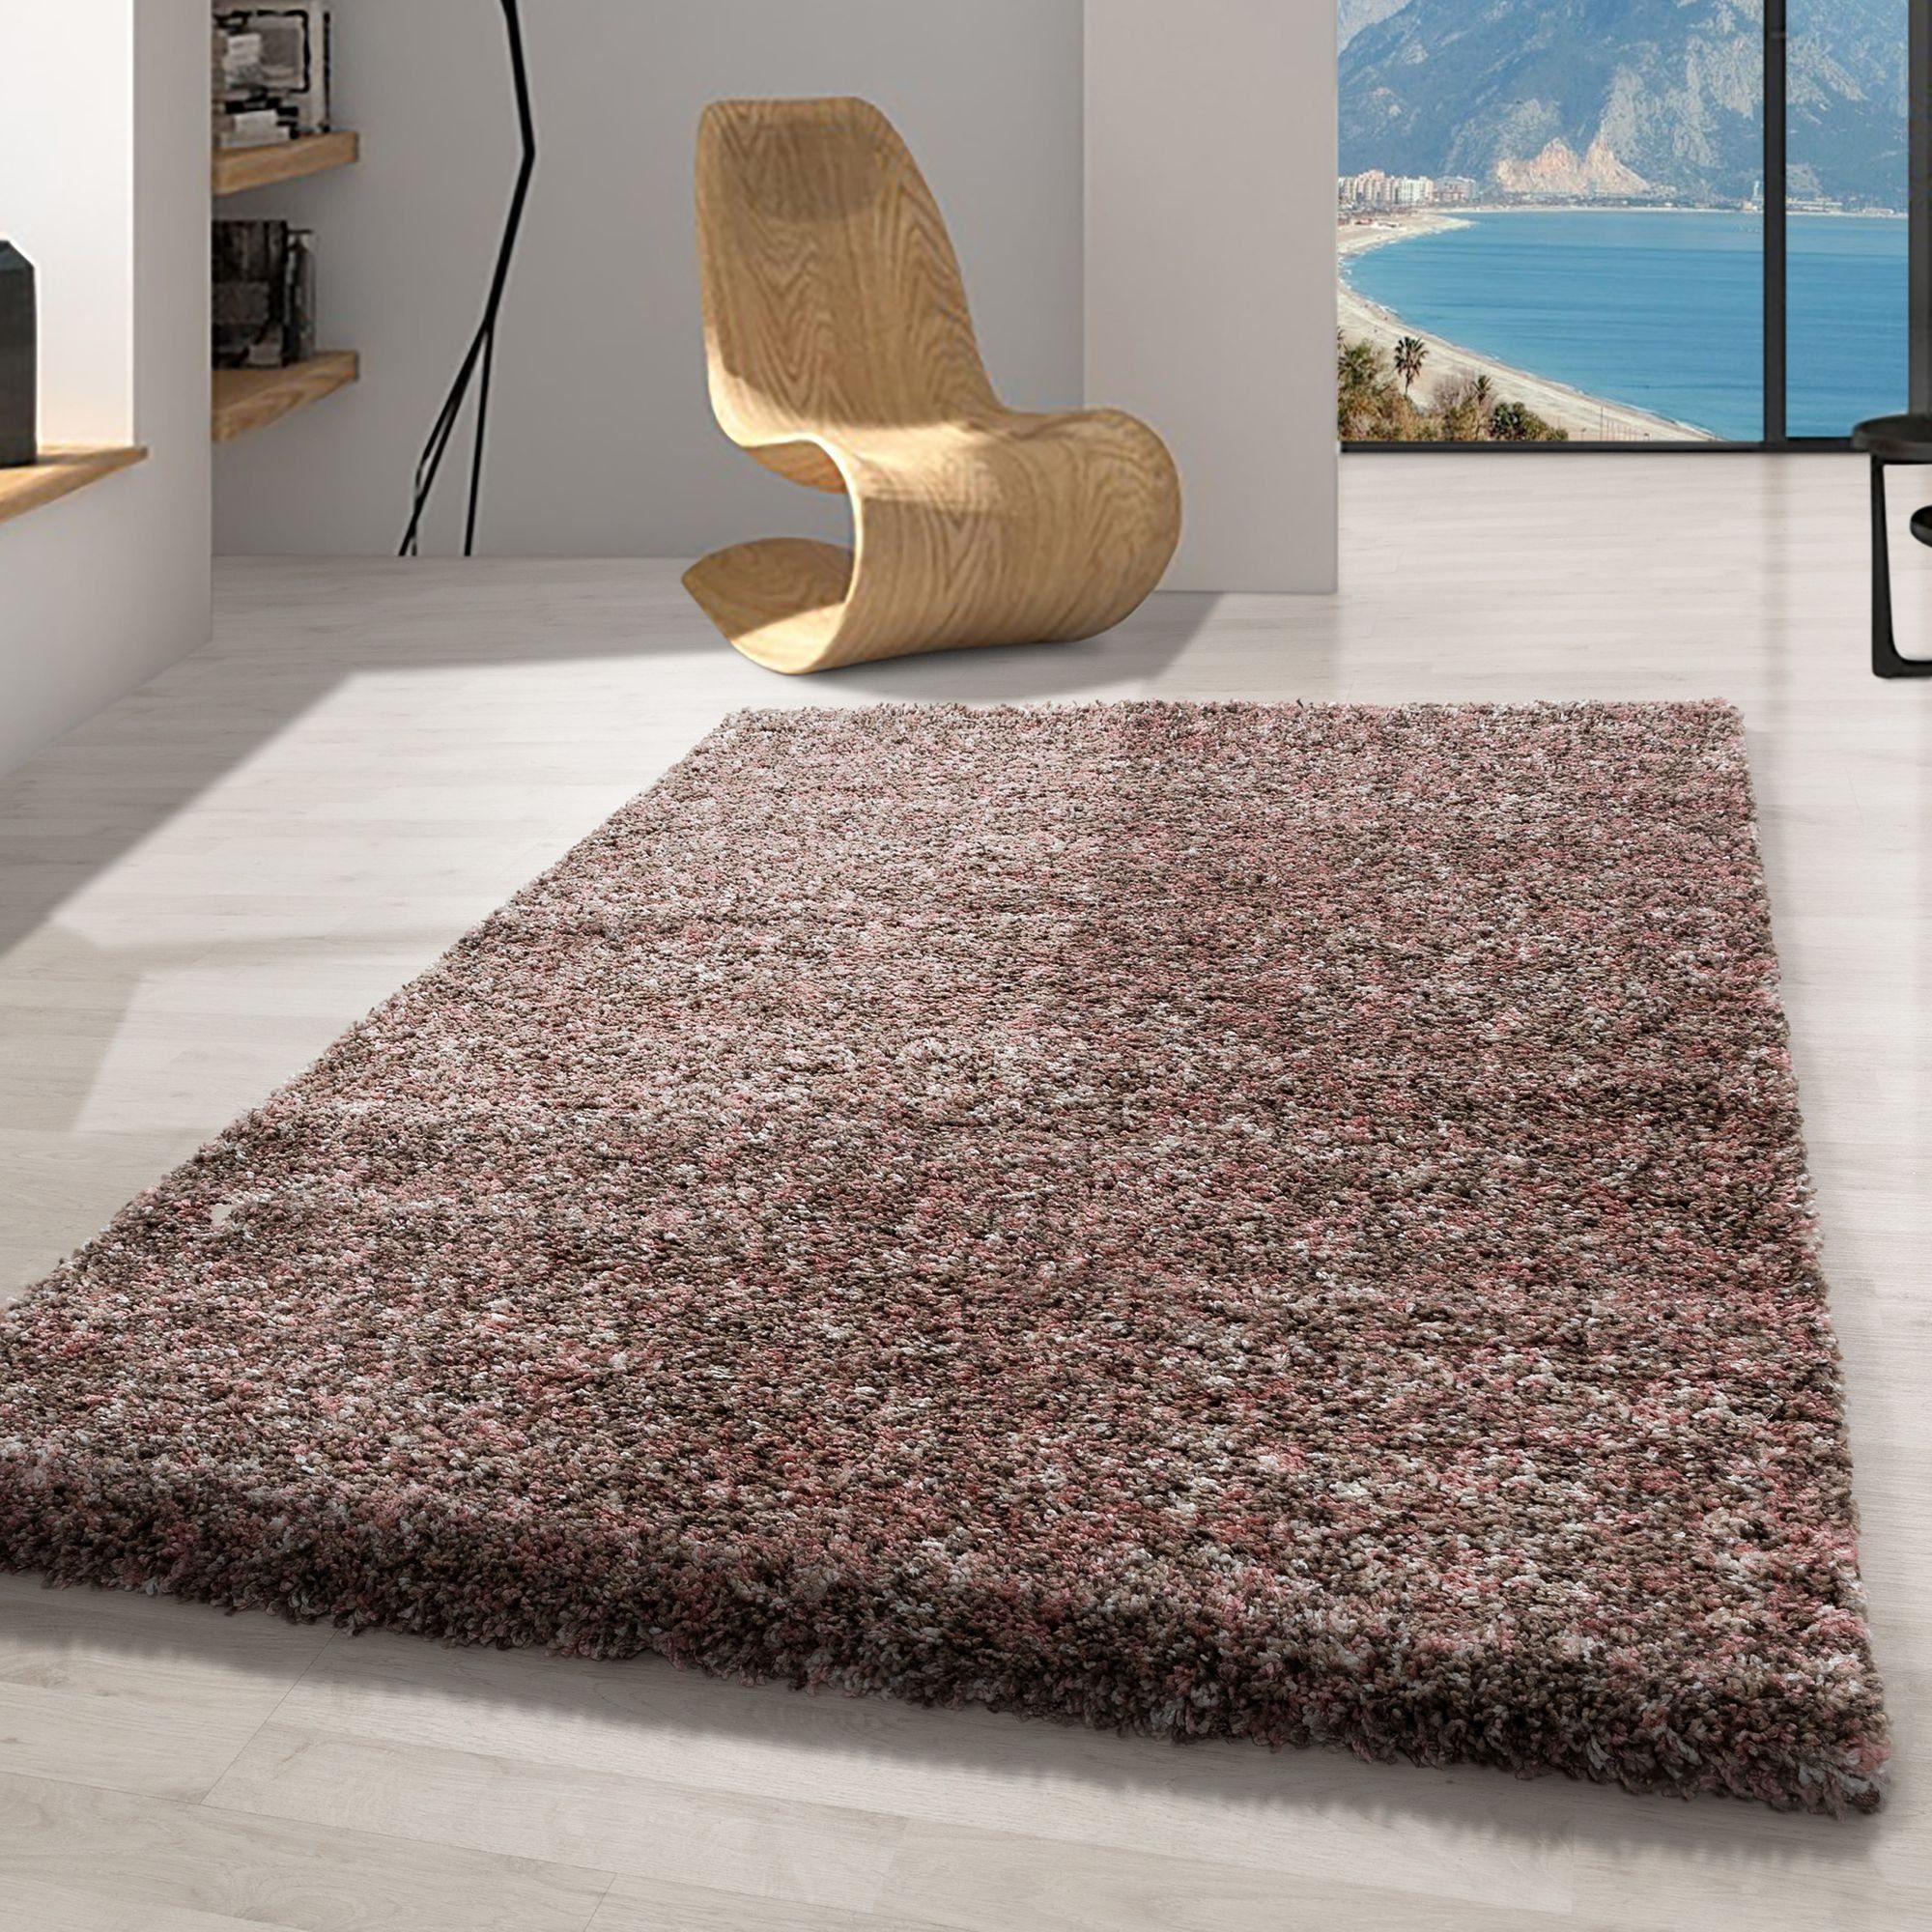 Hochflor-Teppich Meliert Design, Carpetsale24, Läufer, Höhe: 30 mm, Teppich Wohnzimmer Rose